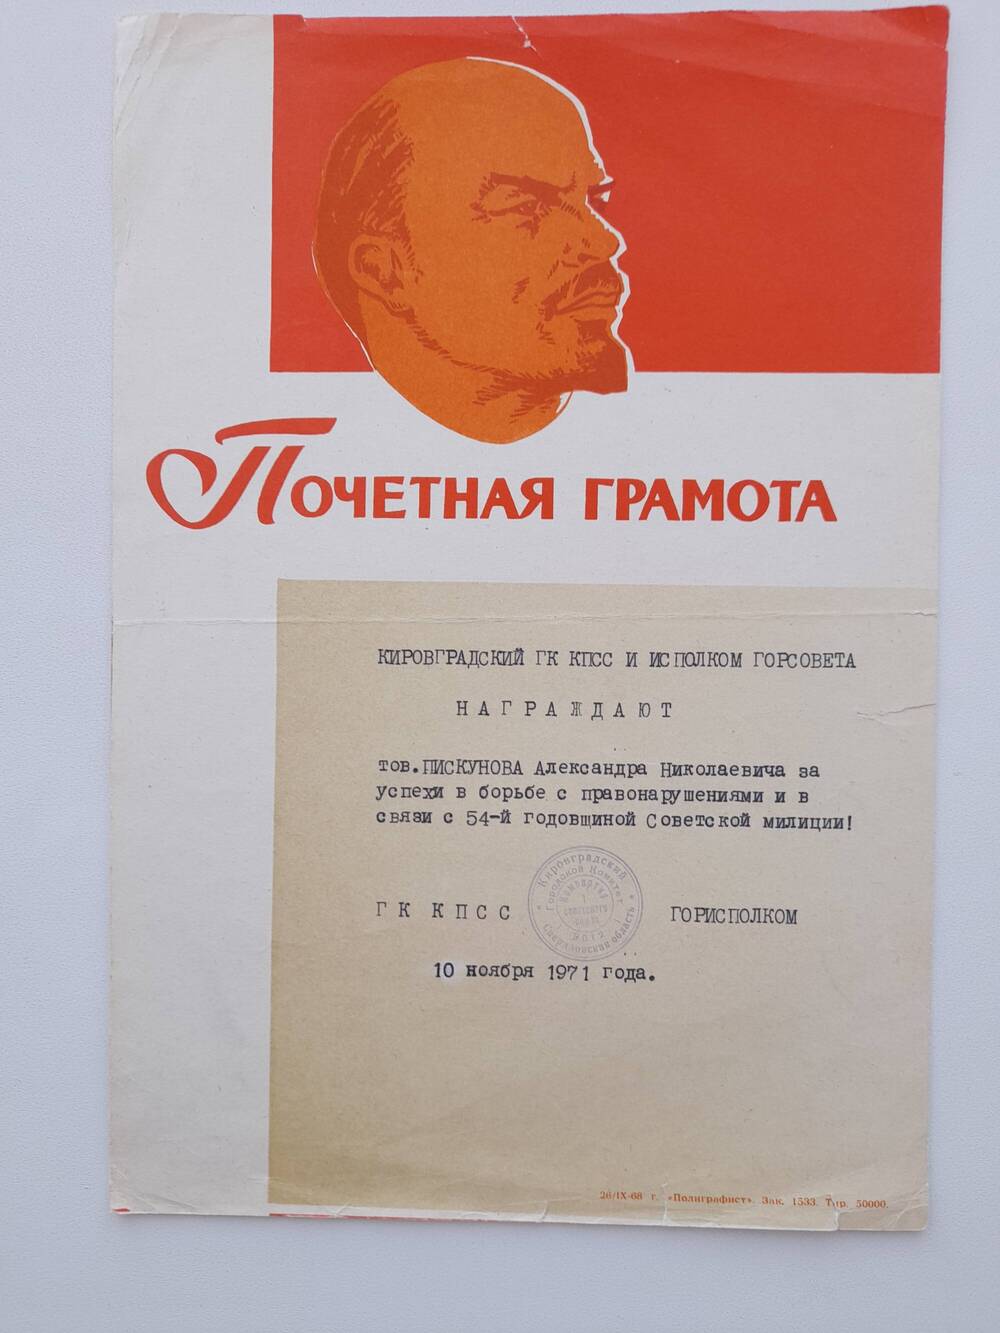 Грамота почетная Пискунова А.Н. в связи с 54-й годовщиной Советской милиции